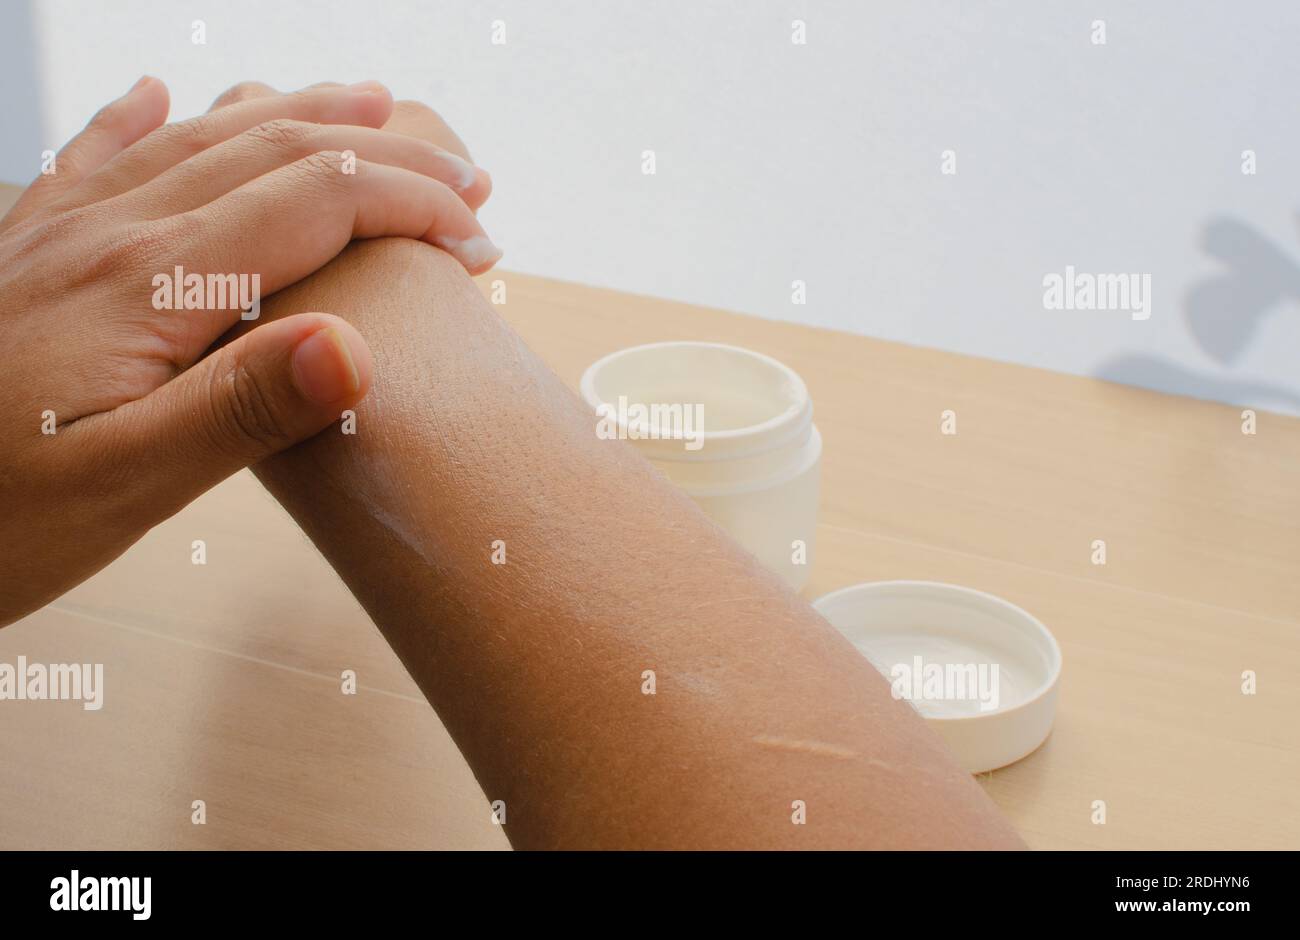 Pelle radiosa: Mani femminili che si prendono cura della pelle con una crema idratante per mantenerla nutriente e bella. Foto Stock